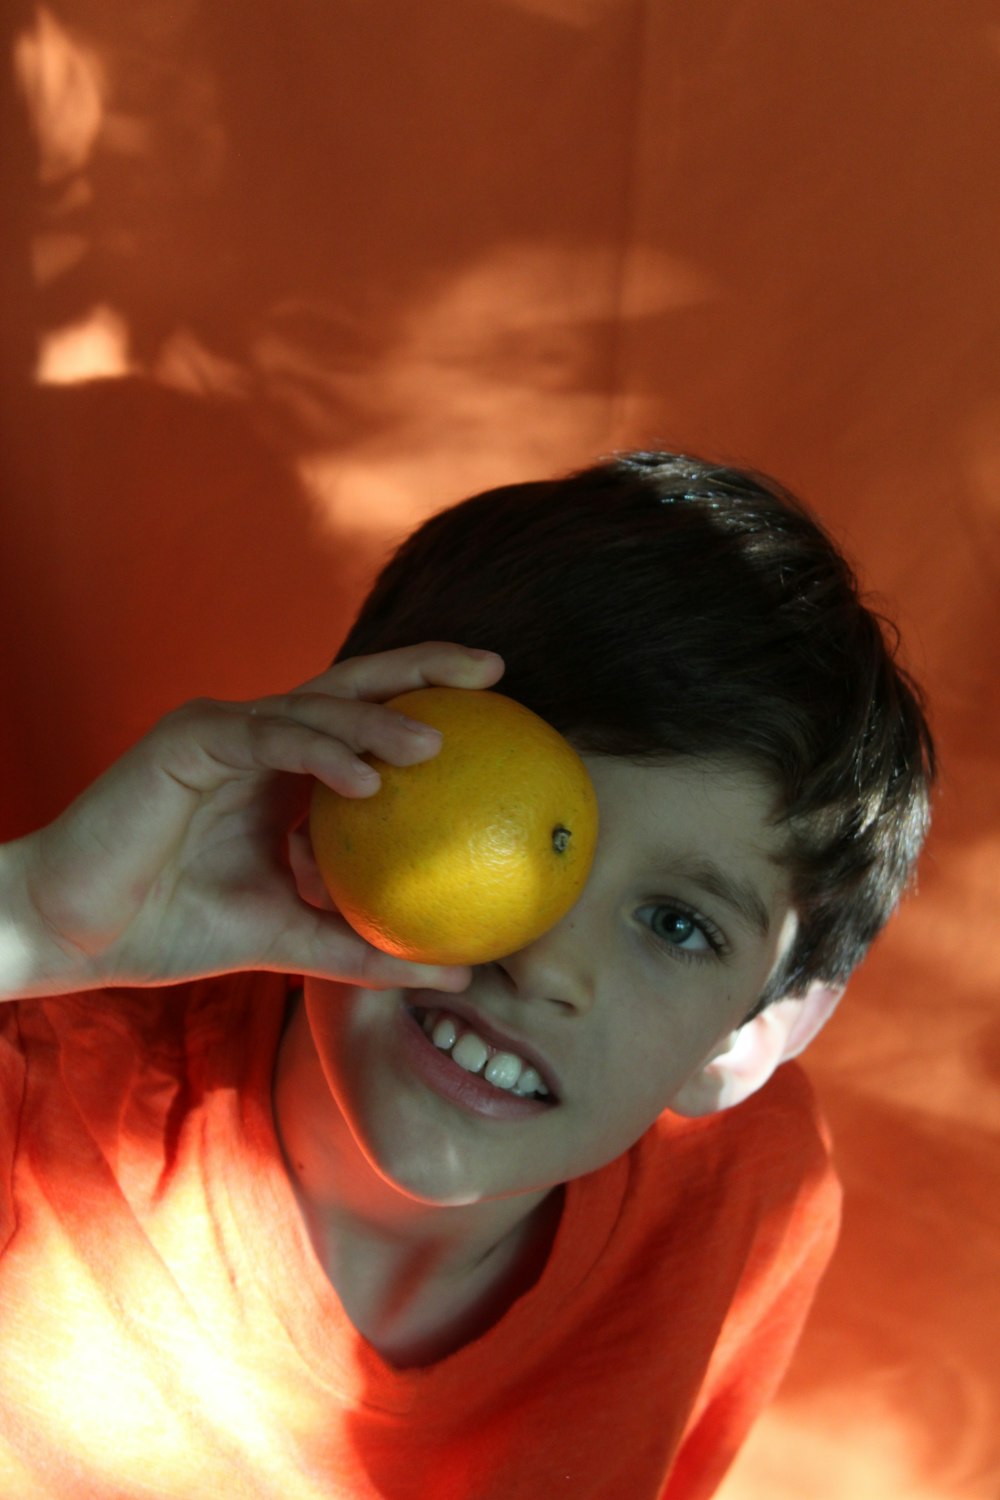 黄色い果物を持つオレンジ色のシャツを着た少年